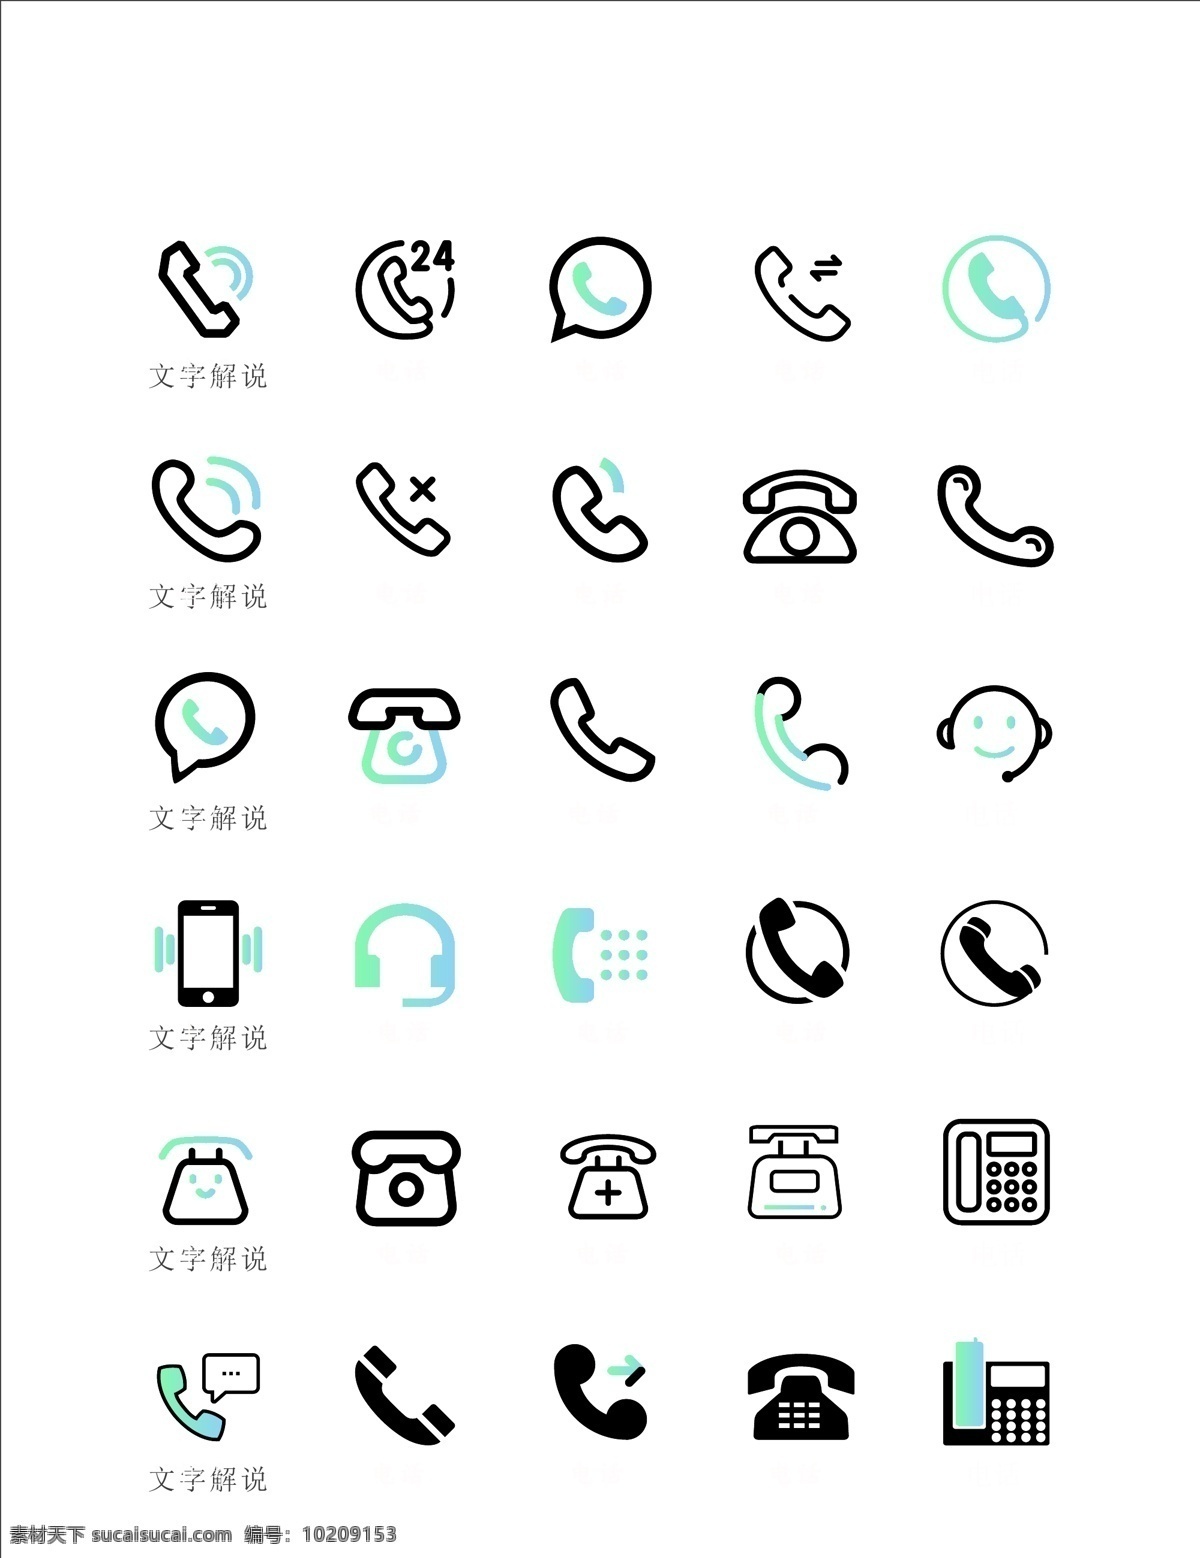 电话 图标 ui 电话ui 电话图标 彩色电话 矢量图标 电话icon 标志图标 其他图标